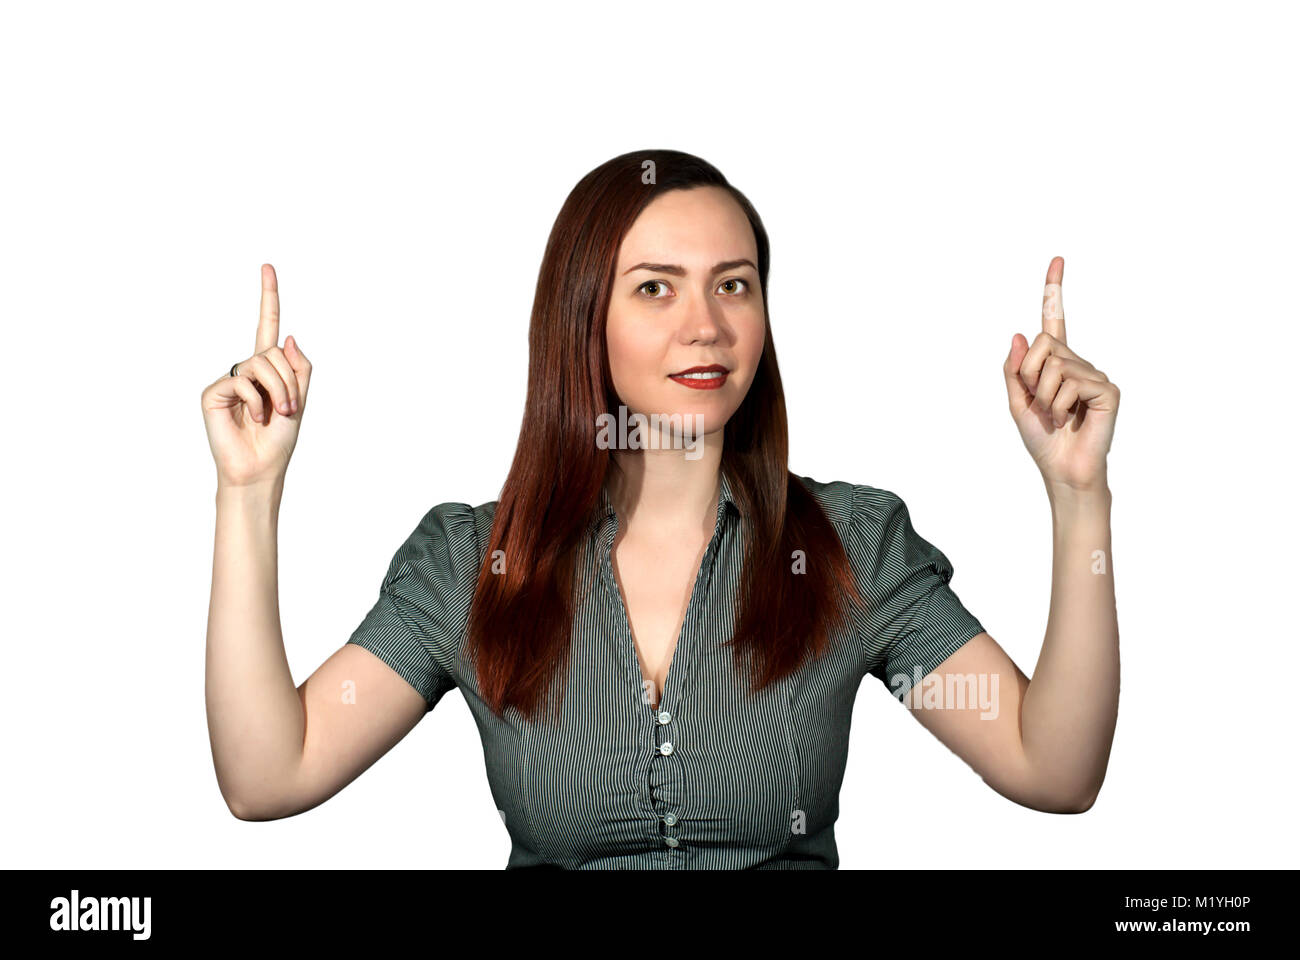 Frau auf einem weißen Hintergrund zeigt mit dem Index Finger beider Hände auf zwei fehlende Objekte Stockfoto